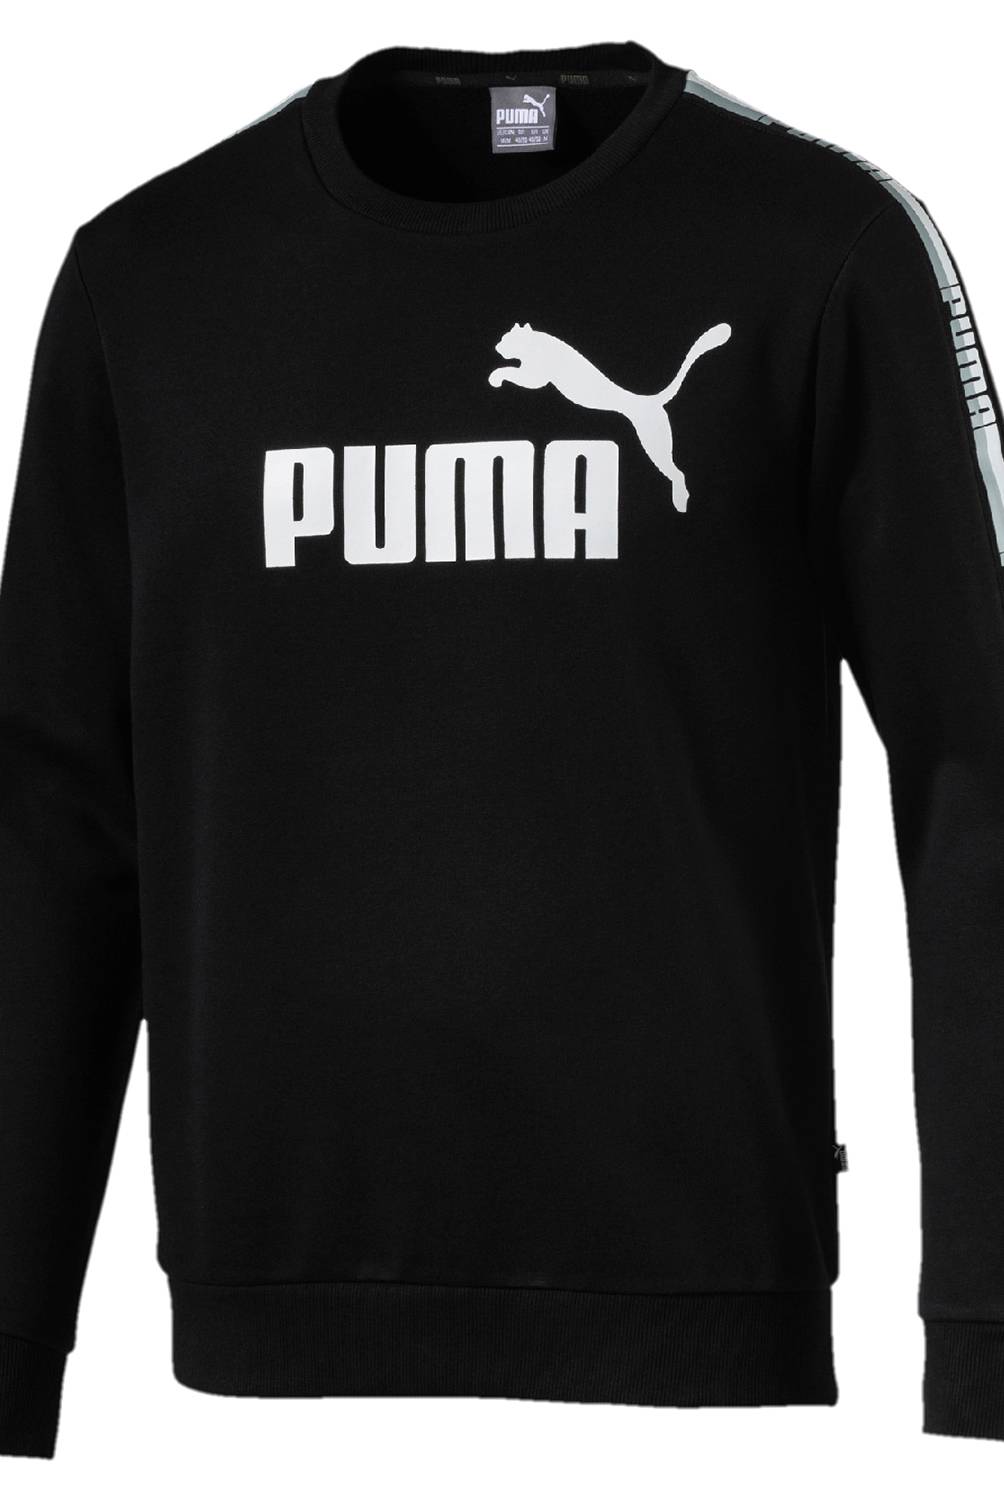 Puma - Polera deportiva Todo deporte Hombre 852415 01